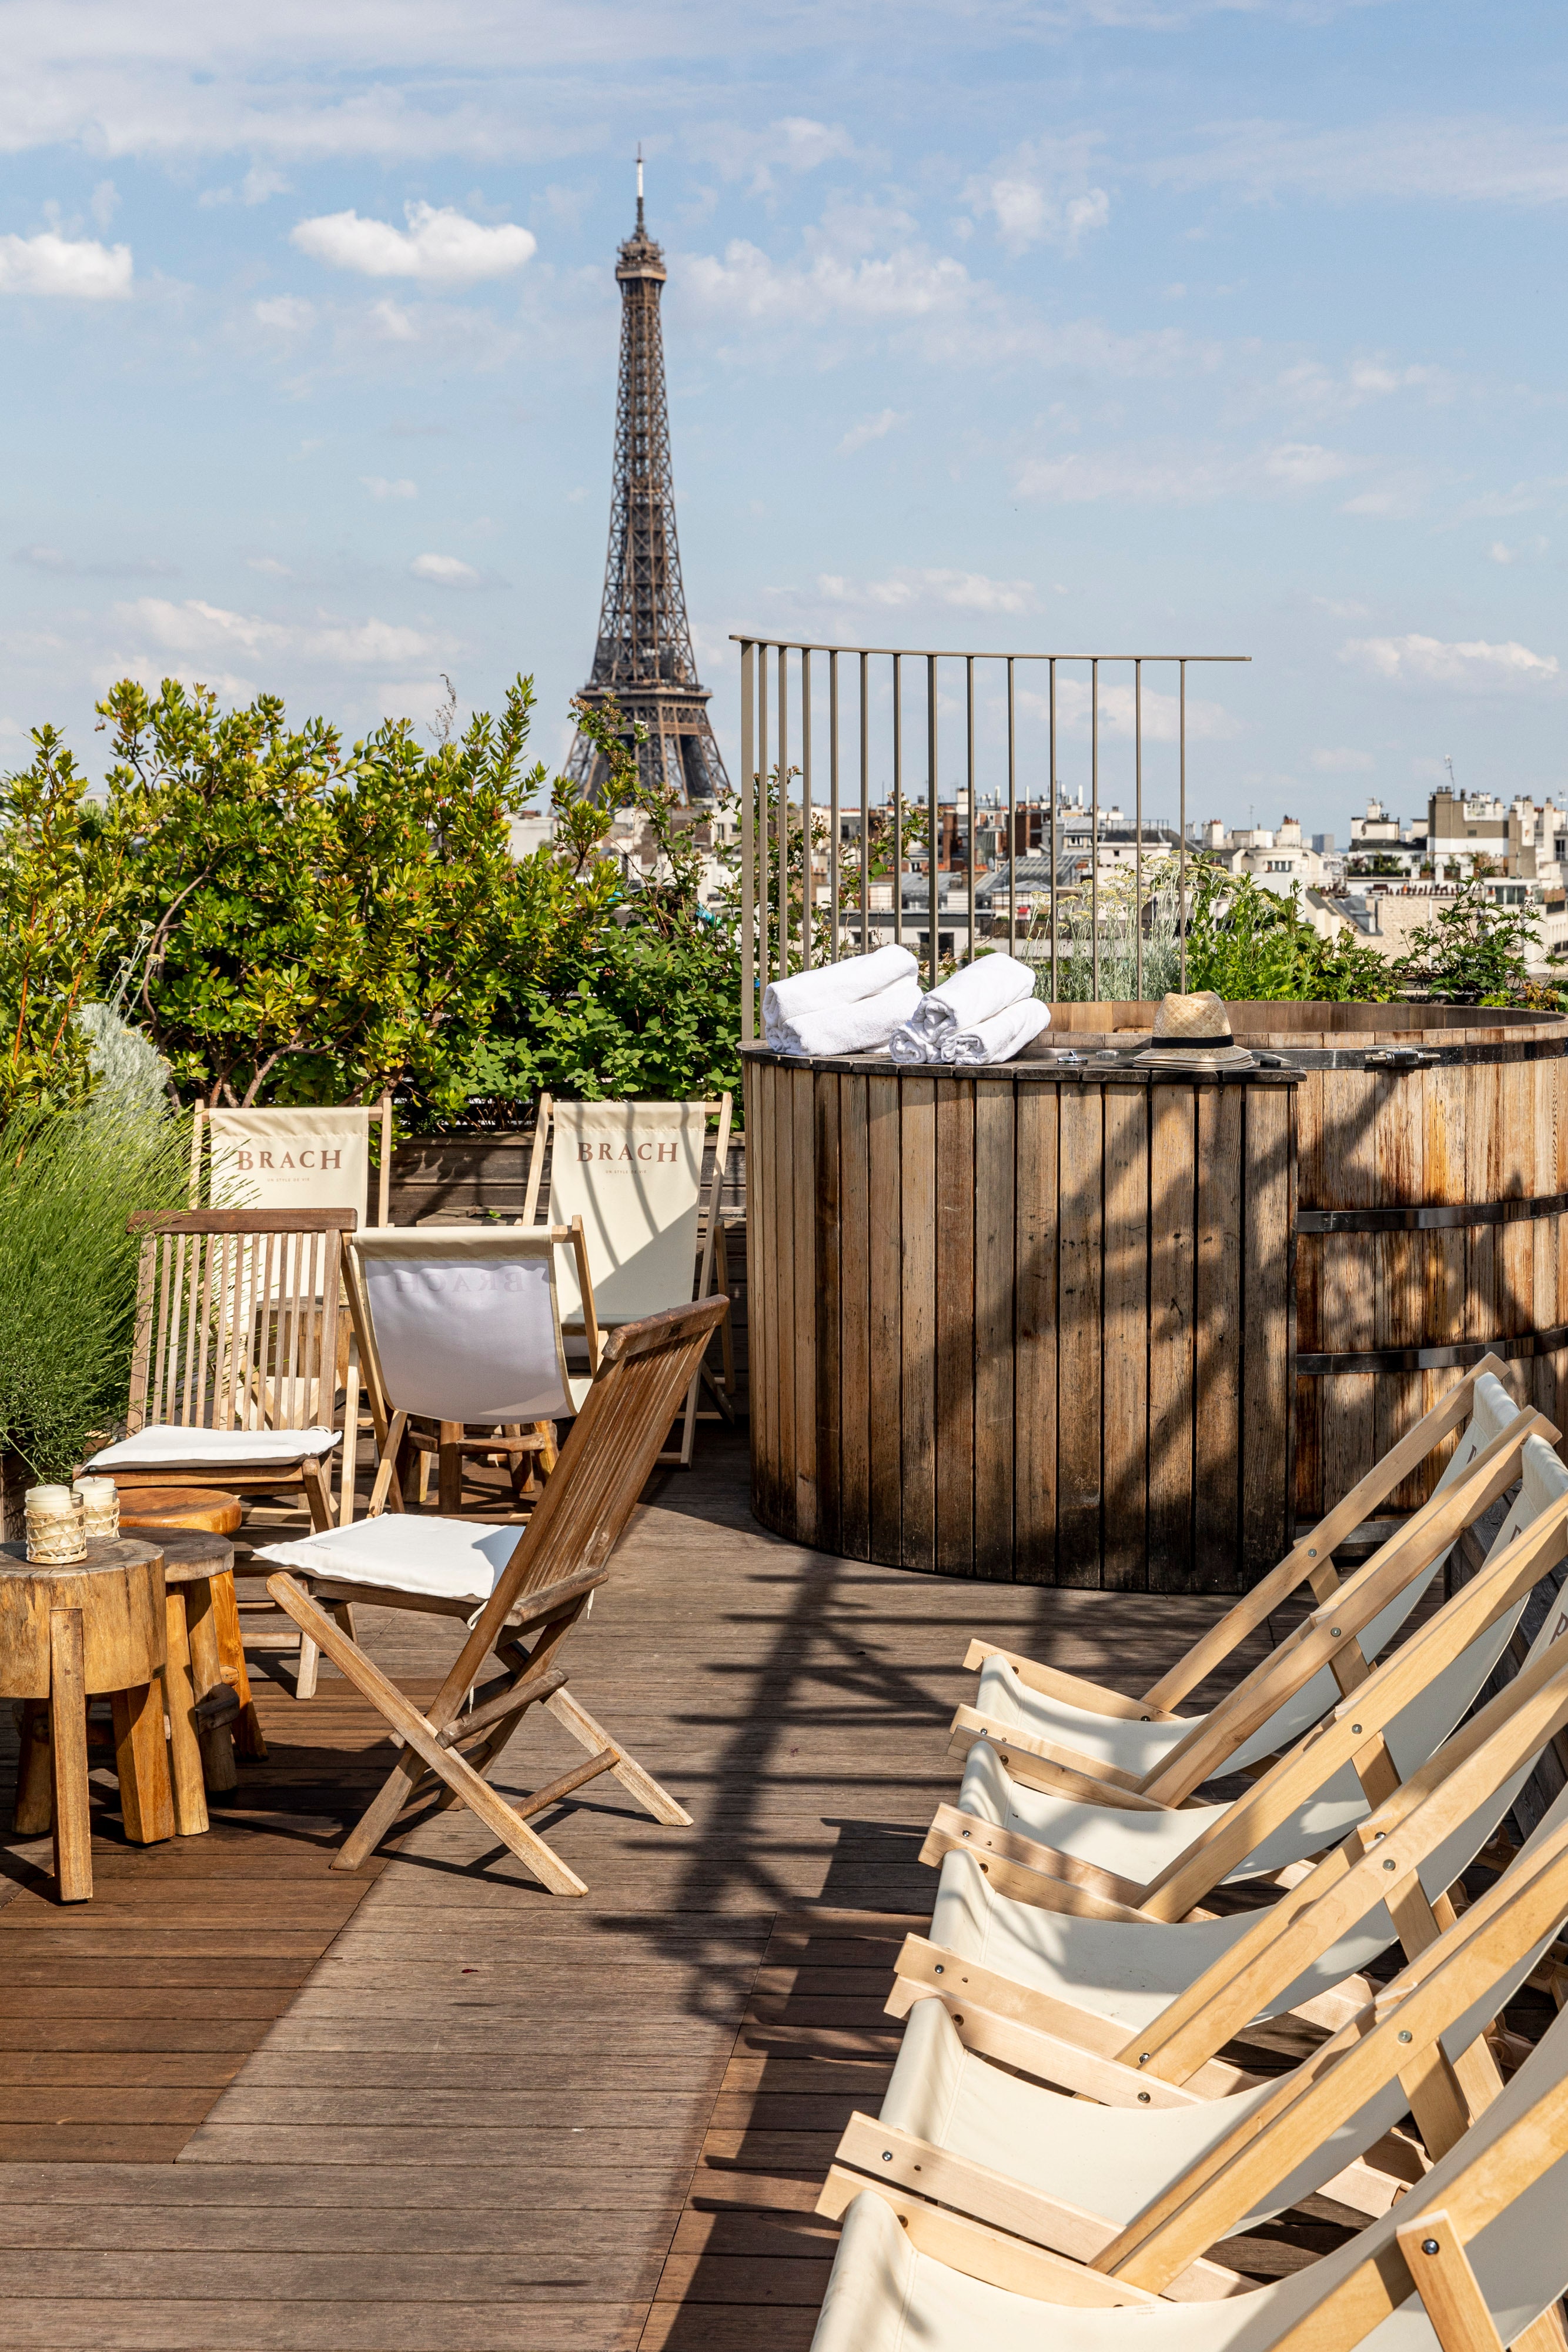 <p>Au Brach, on quitte la ville le temps de quelques heures pour s'enivrer de l'air de campagne qui flotte sur son bar toit-terrasse à Paris XVI. On y trouve un <a href="https://www.admagazine.fr/article/jardins-sur-les-toits-exemples-spectaculaires?mbid=synd_msn_rss&utm_source=msn&utm_medium=syndication">jardin urbain</a> doté d'un poulailler et d'un potager, ainsi qu'un bain norvégien. Le panorama sur Paris est à couper le souffle, avec une vue privilégiée sur la tour Eiffel. Les cocktails sont élaborés avec soin par un mixologiste.</p> <p><strong>Ouverture prochaine.</strong> Fermeture du 13 juillet au 25 août. Sur réservation. Cocktails : 25 euros. Verres de vin à partir de 15 euros.</p> <p>1-7, rue Jean Richepin, 75116 Paris.</p> <div class="callout"><p><a href="https://brachparis.com/restaurant-bar-rooftop/#univers/rooftop" title="Réserver">Réserver</a></p> </div><p>Recevez les meilleures infos sur la décoration, le design, l'art, l'architecture et l'art de vivre directement par e-mail.</p><a href="https://newsletter.admagazine.fr?sourceCode=msnsend">S'inscrire ici</a>